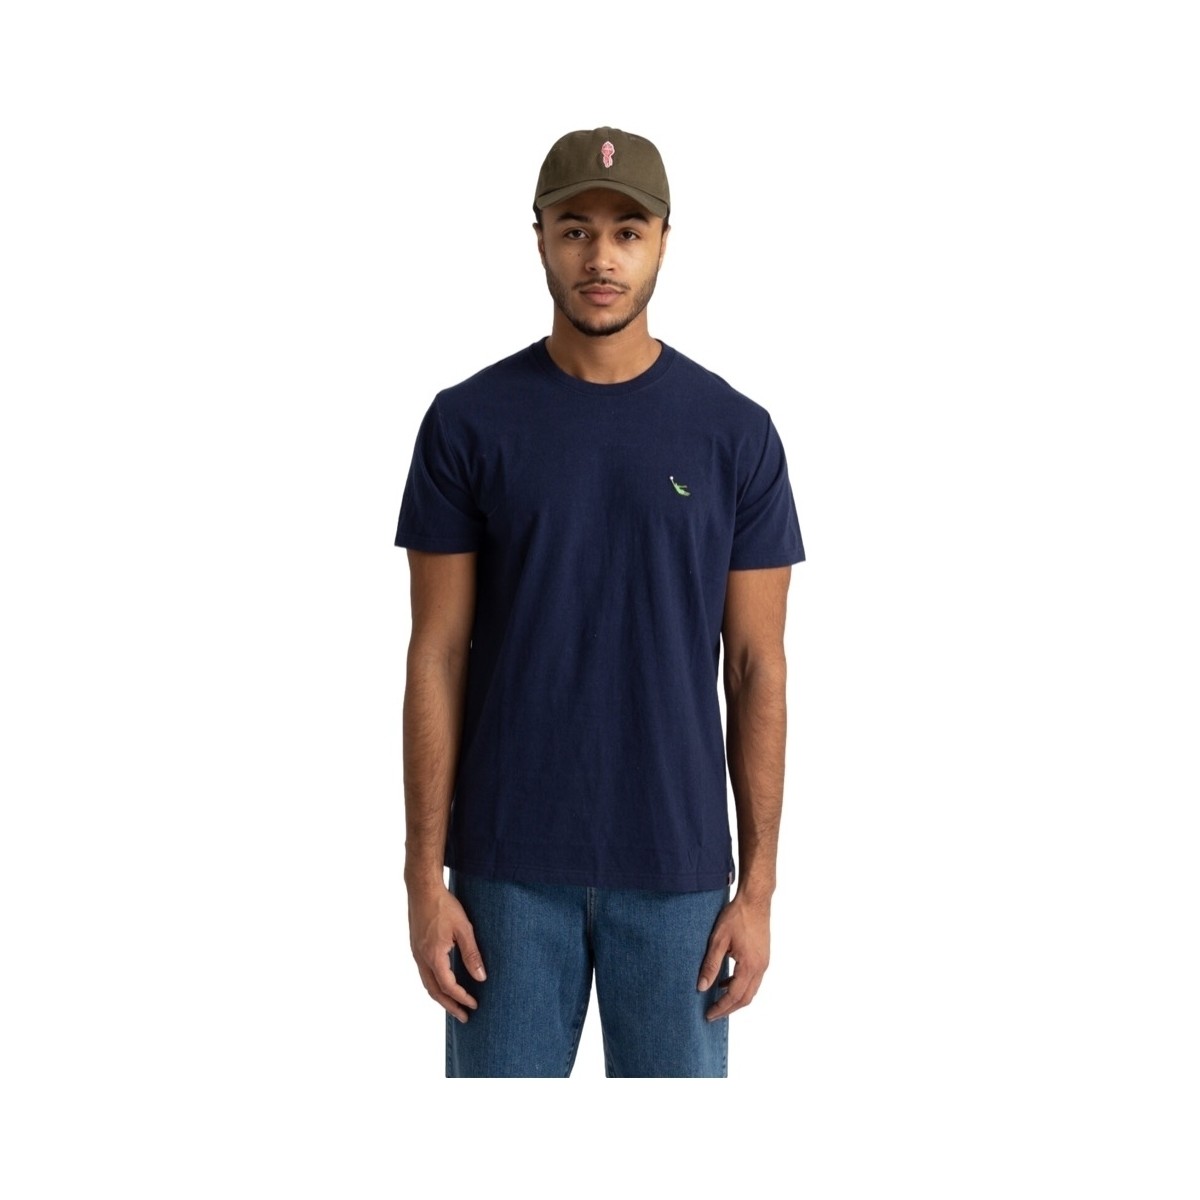 Ruhák Férfi Pólók / Galléros Pólók Revolution 1302 KEE T-Shirt - Navy Melange Kék